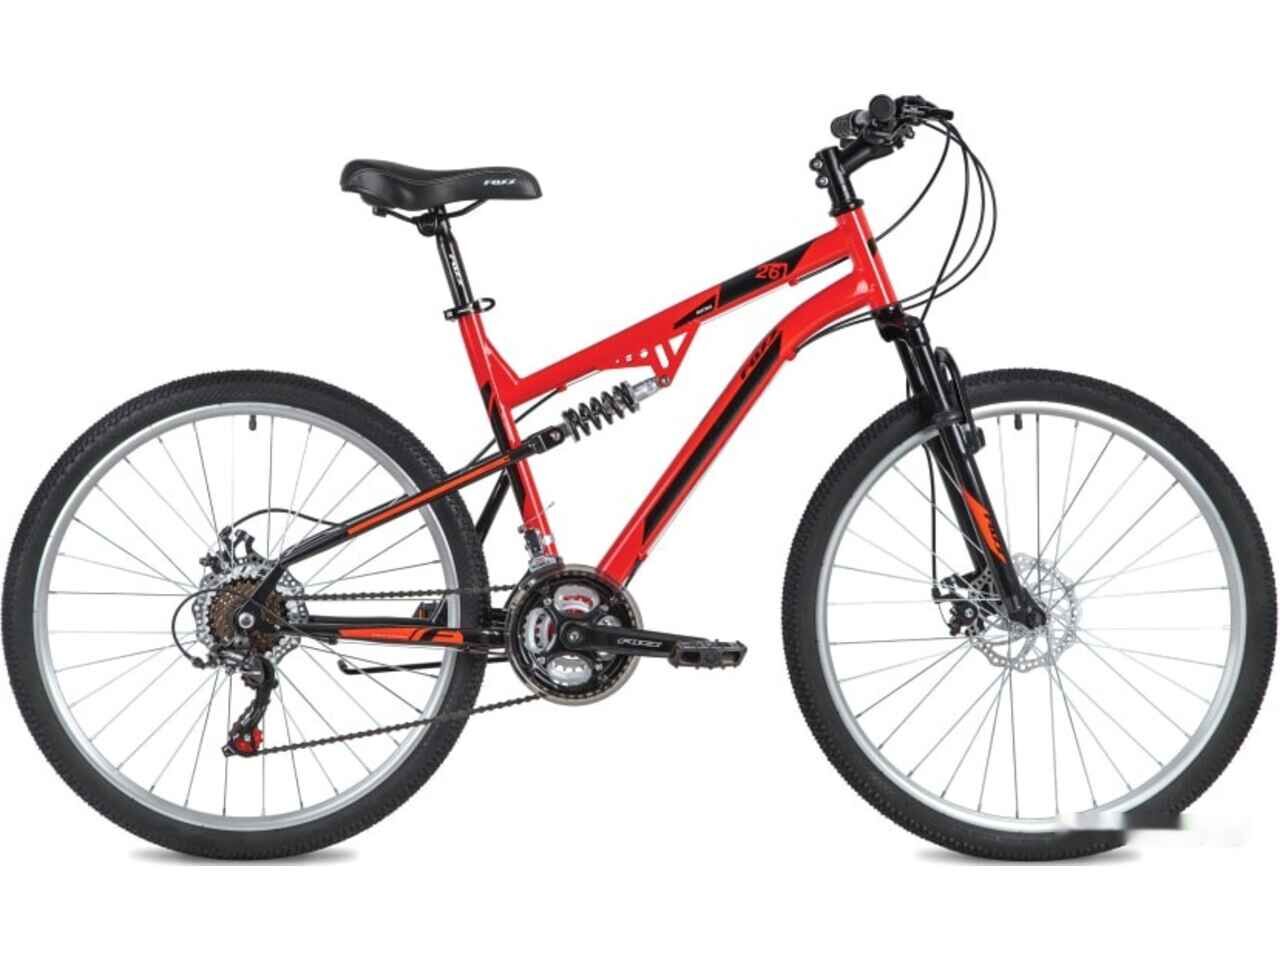 Велосипед Foxx Matrix 26 р.20 2021 (красный)